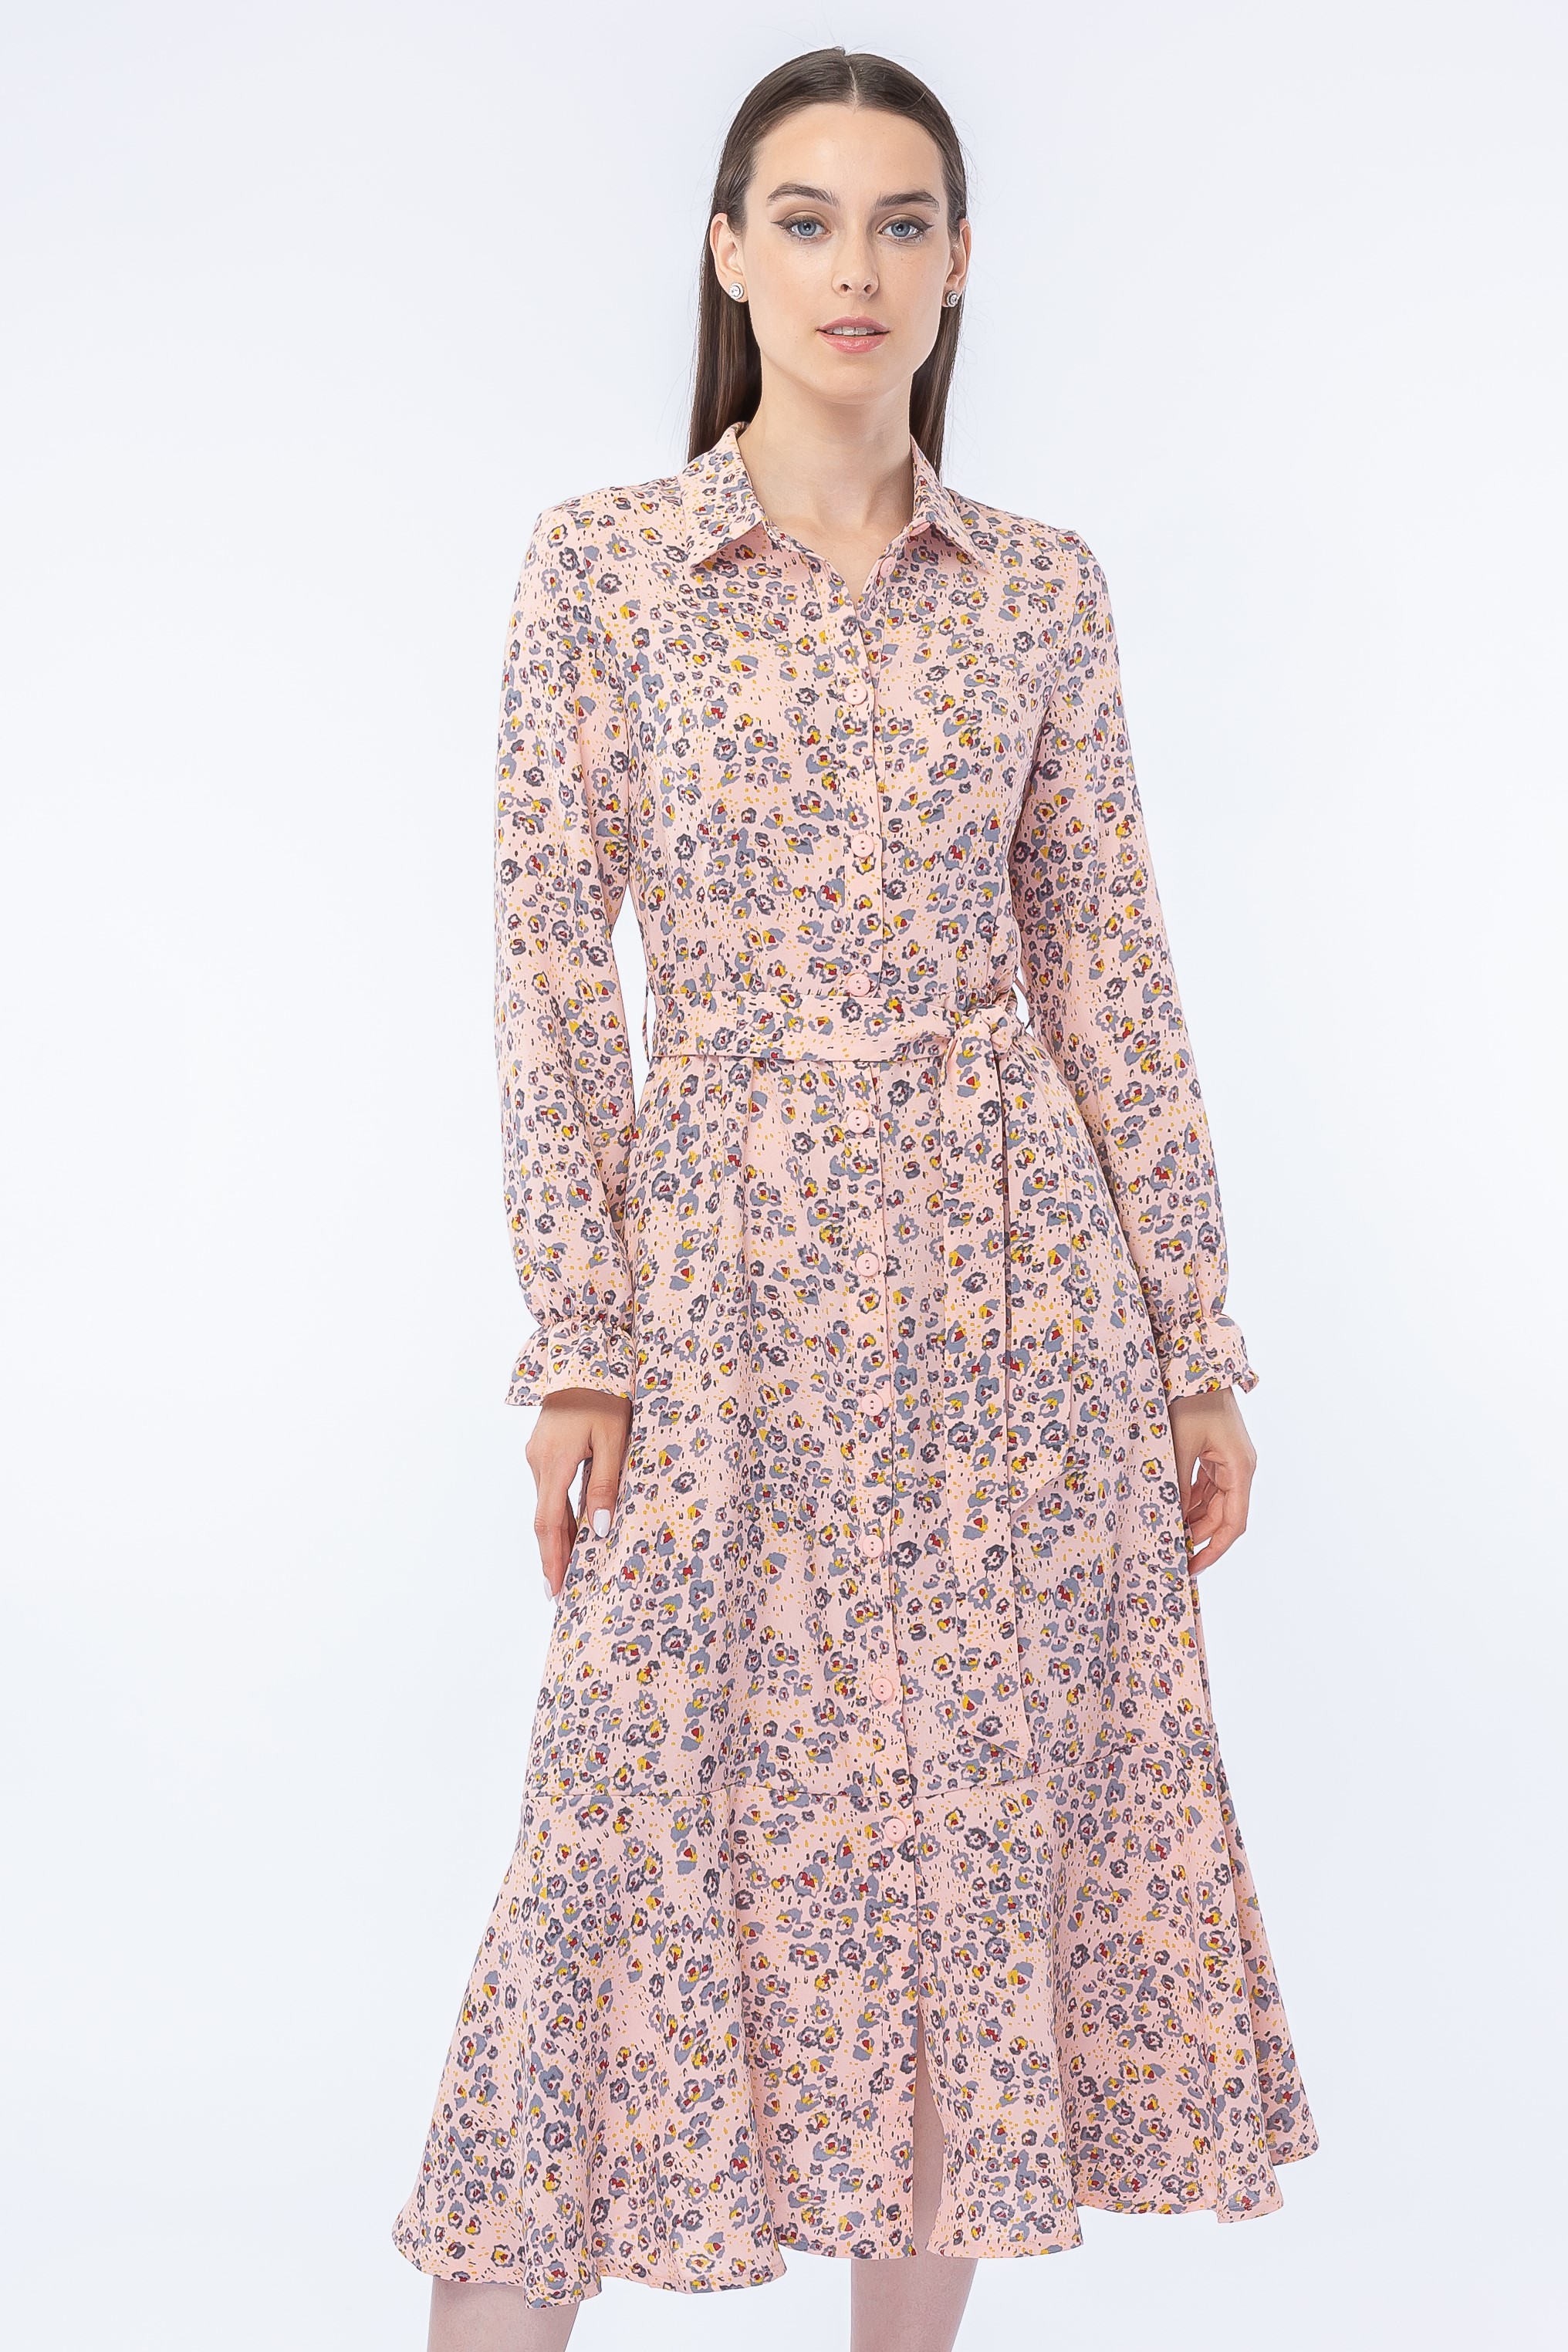 Платье женское Vladi Collection 3080-54 розовое 44 RU